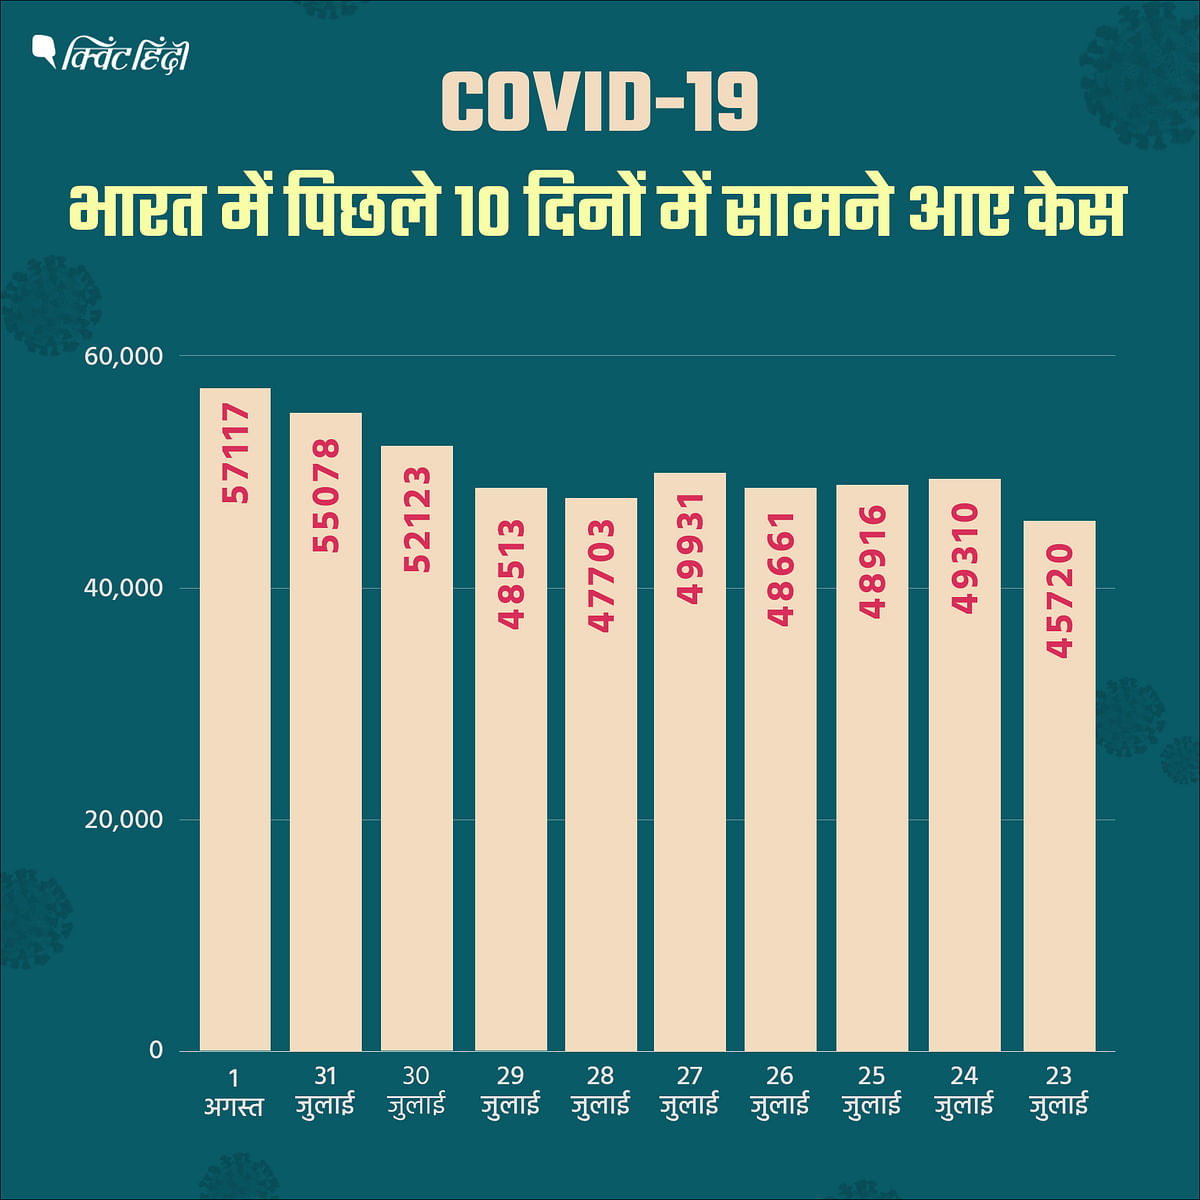 क्या भारत की ज्यादा आबादी की वजह से यहां ज्यादा COVID-19 केस सामने आ रहे हैं?